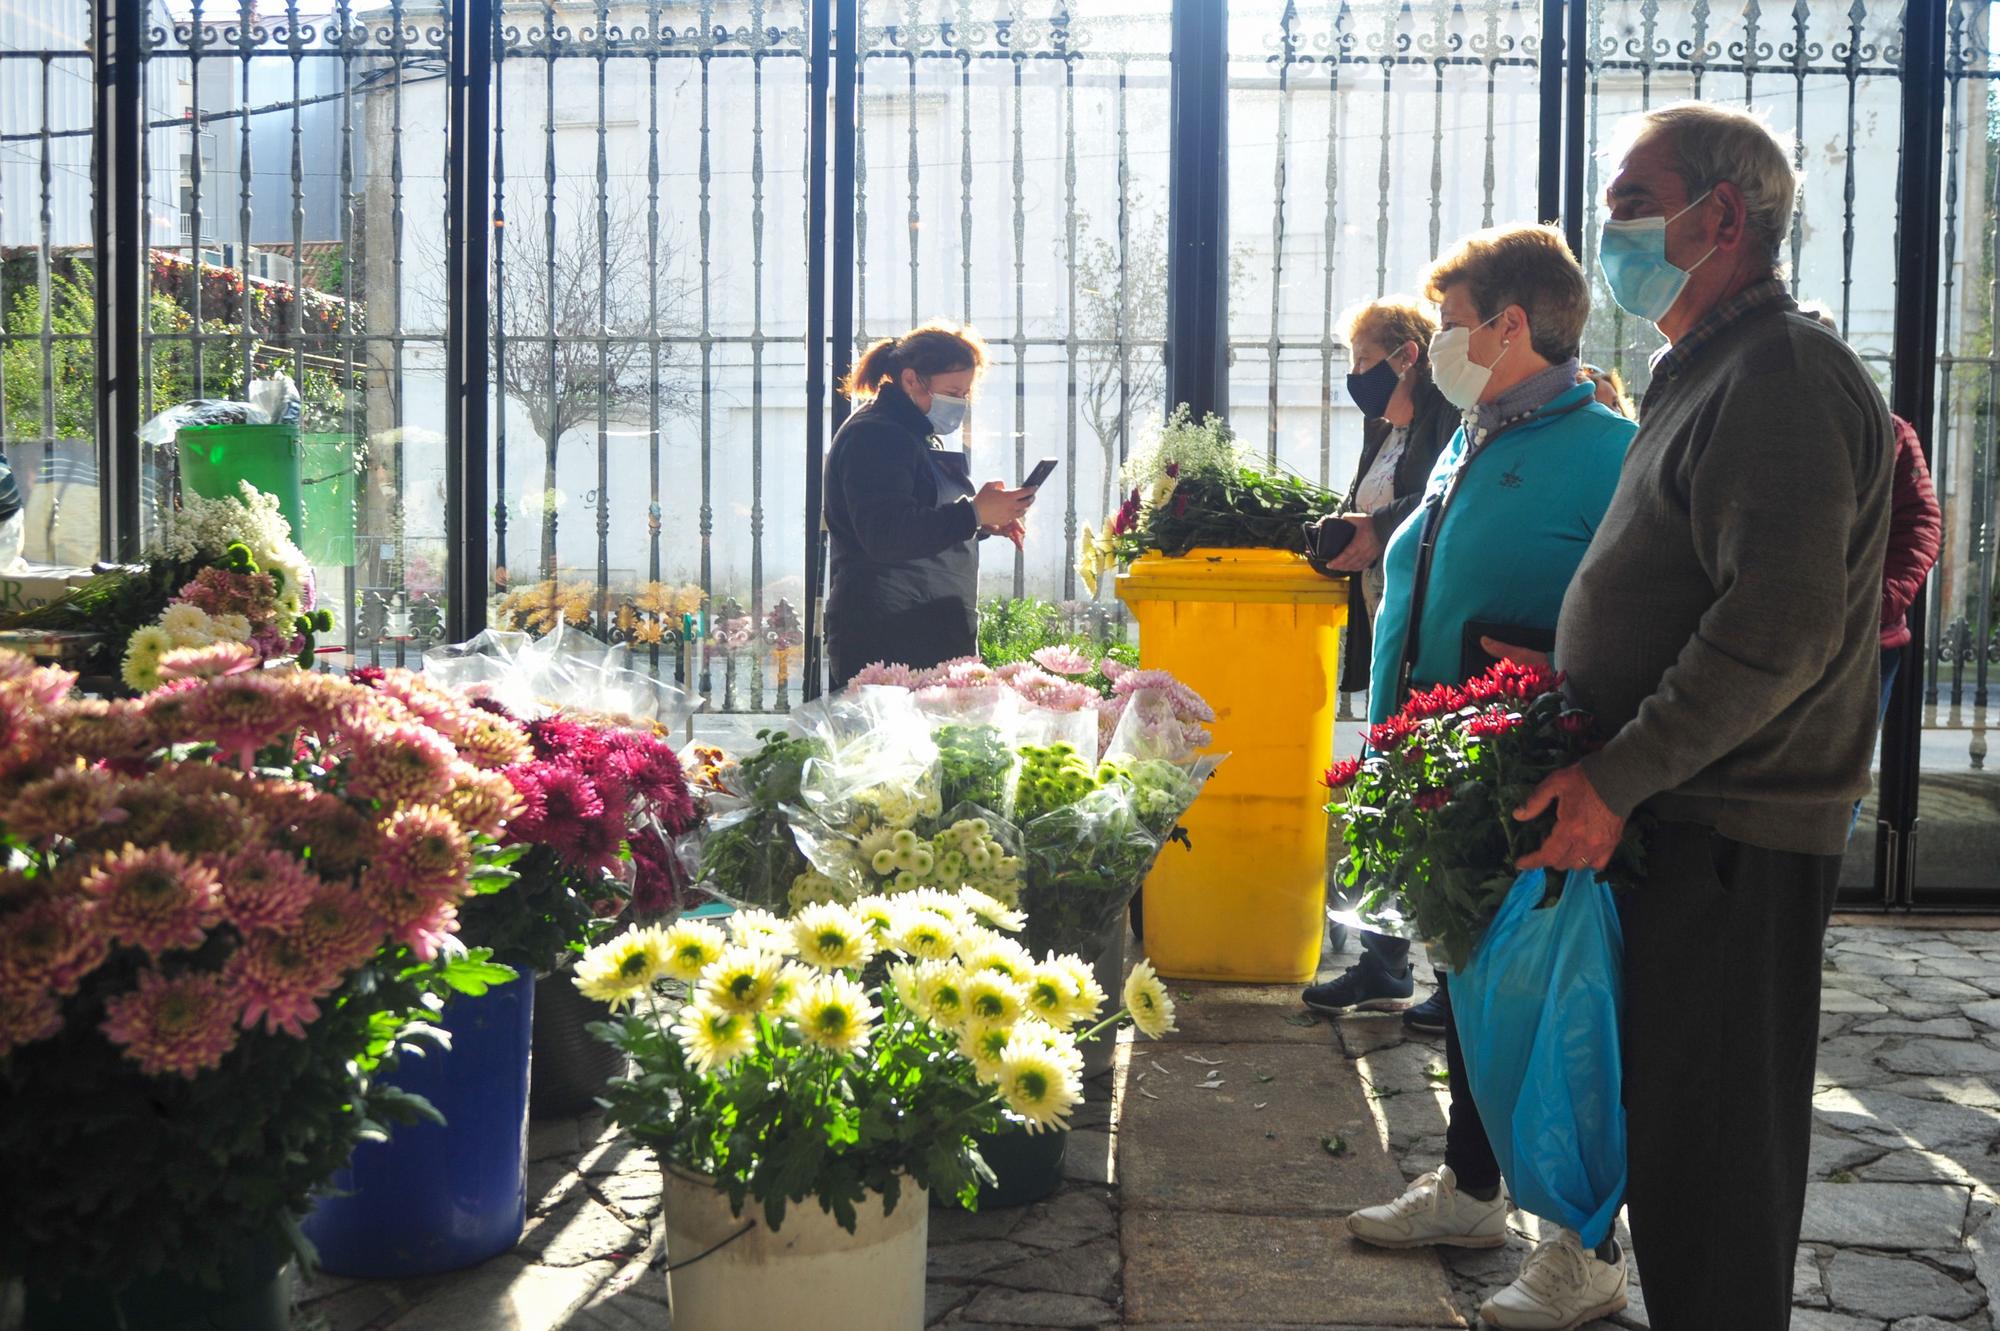 El Mercado das Flores en la Praza da Peixería.